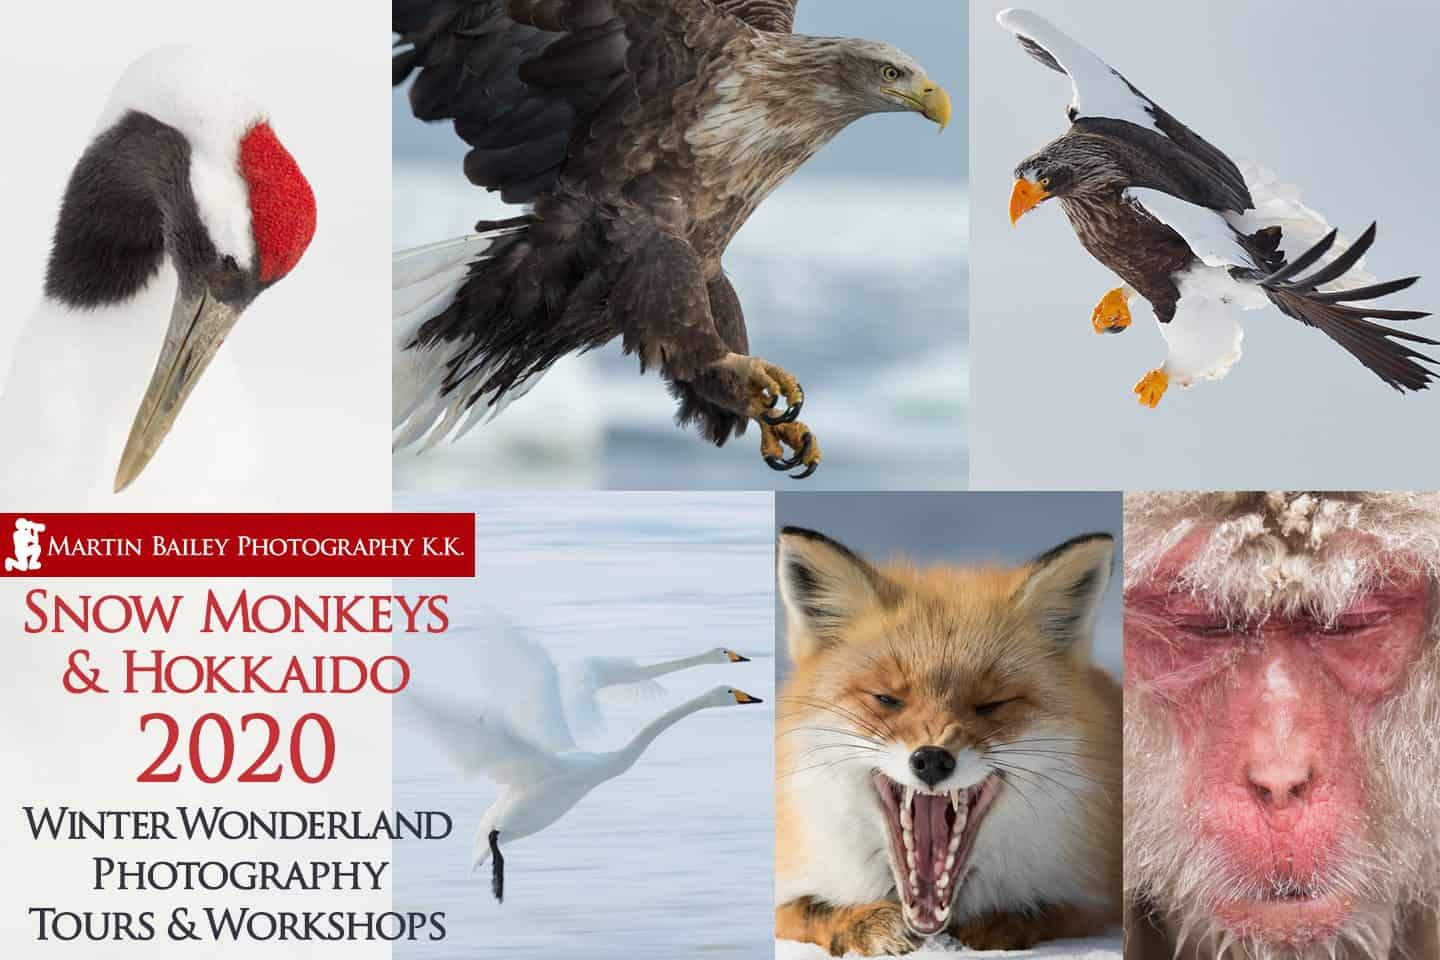 Snow Monkeys & Hokkaido Tour and Workshop 2020